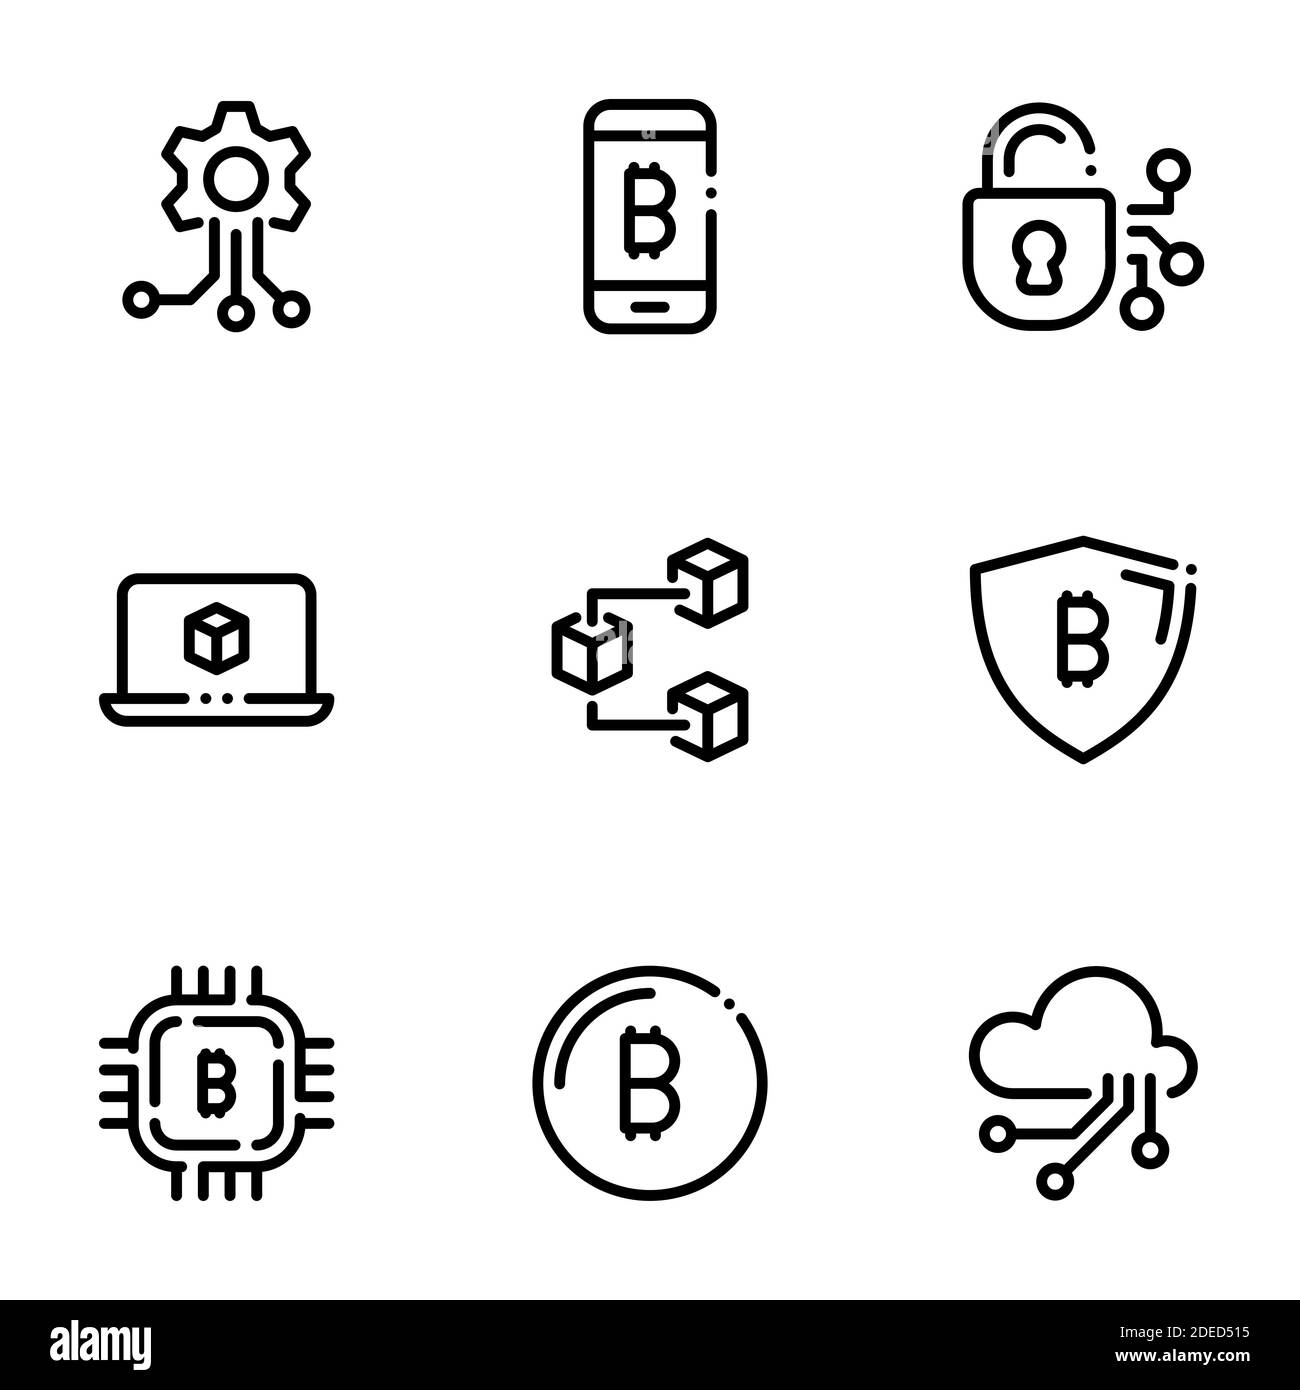 Ensemble d'icônes noires isolées sur fond blanc, sur le thème de la technologie blockchain Illustration de Vecteur